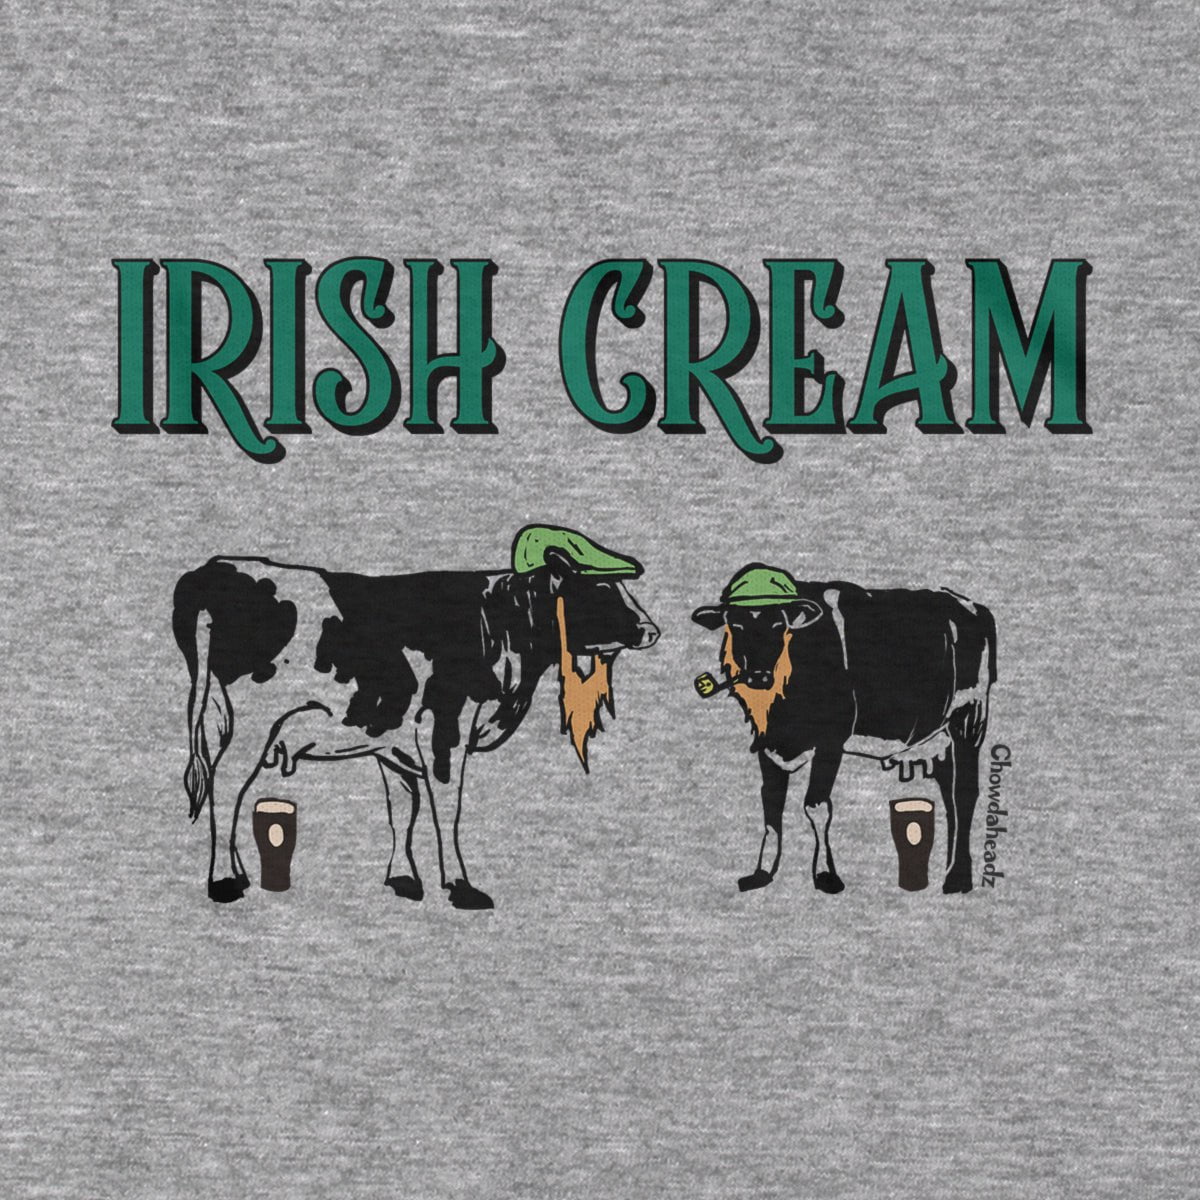 Irish Cream T-Shirt - Chowdaheadz